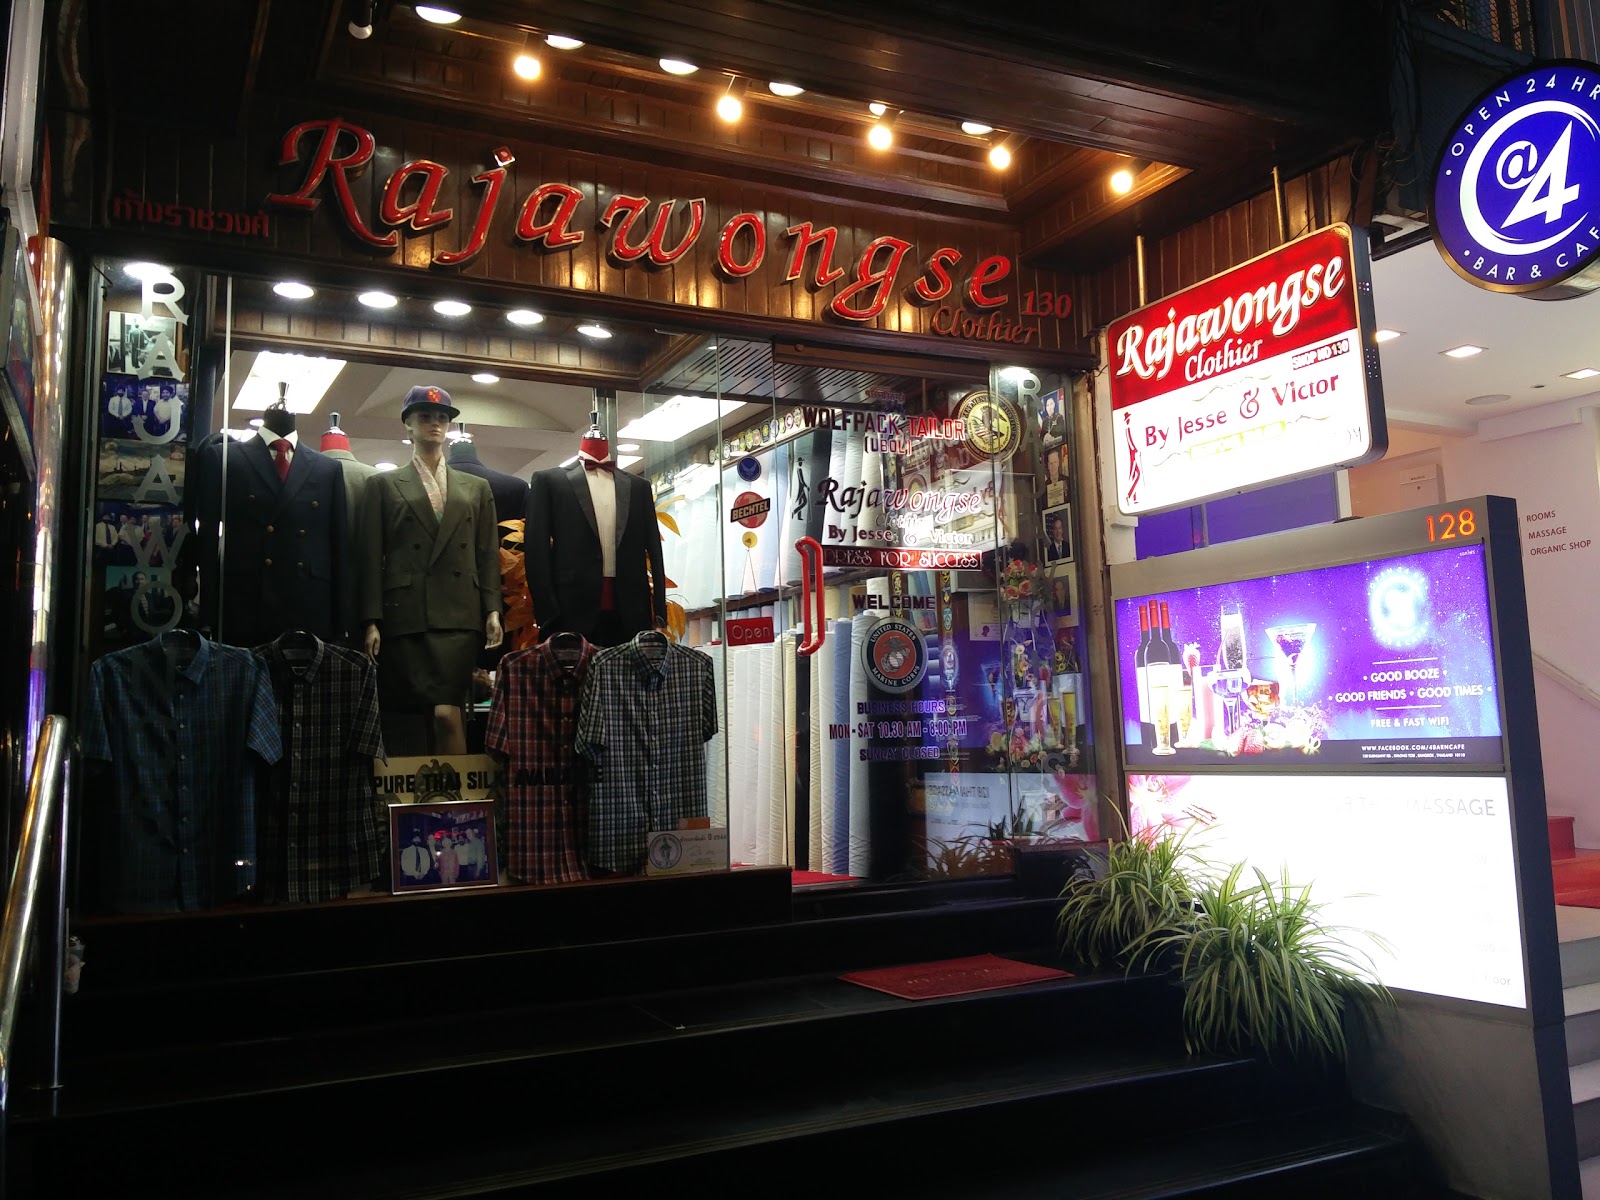 Rajawongse Clothier